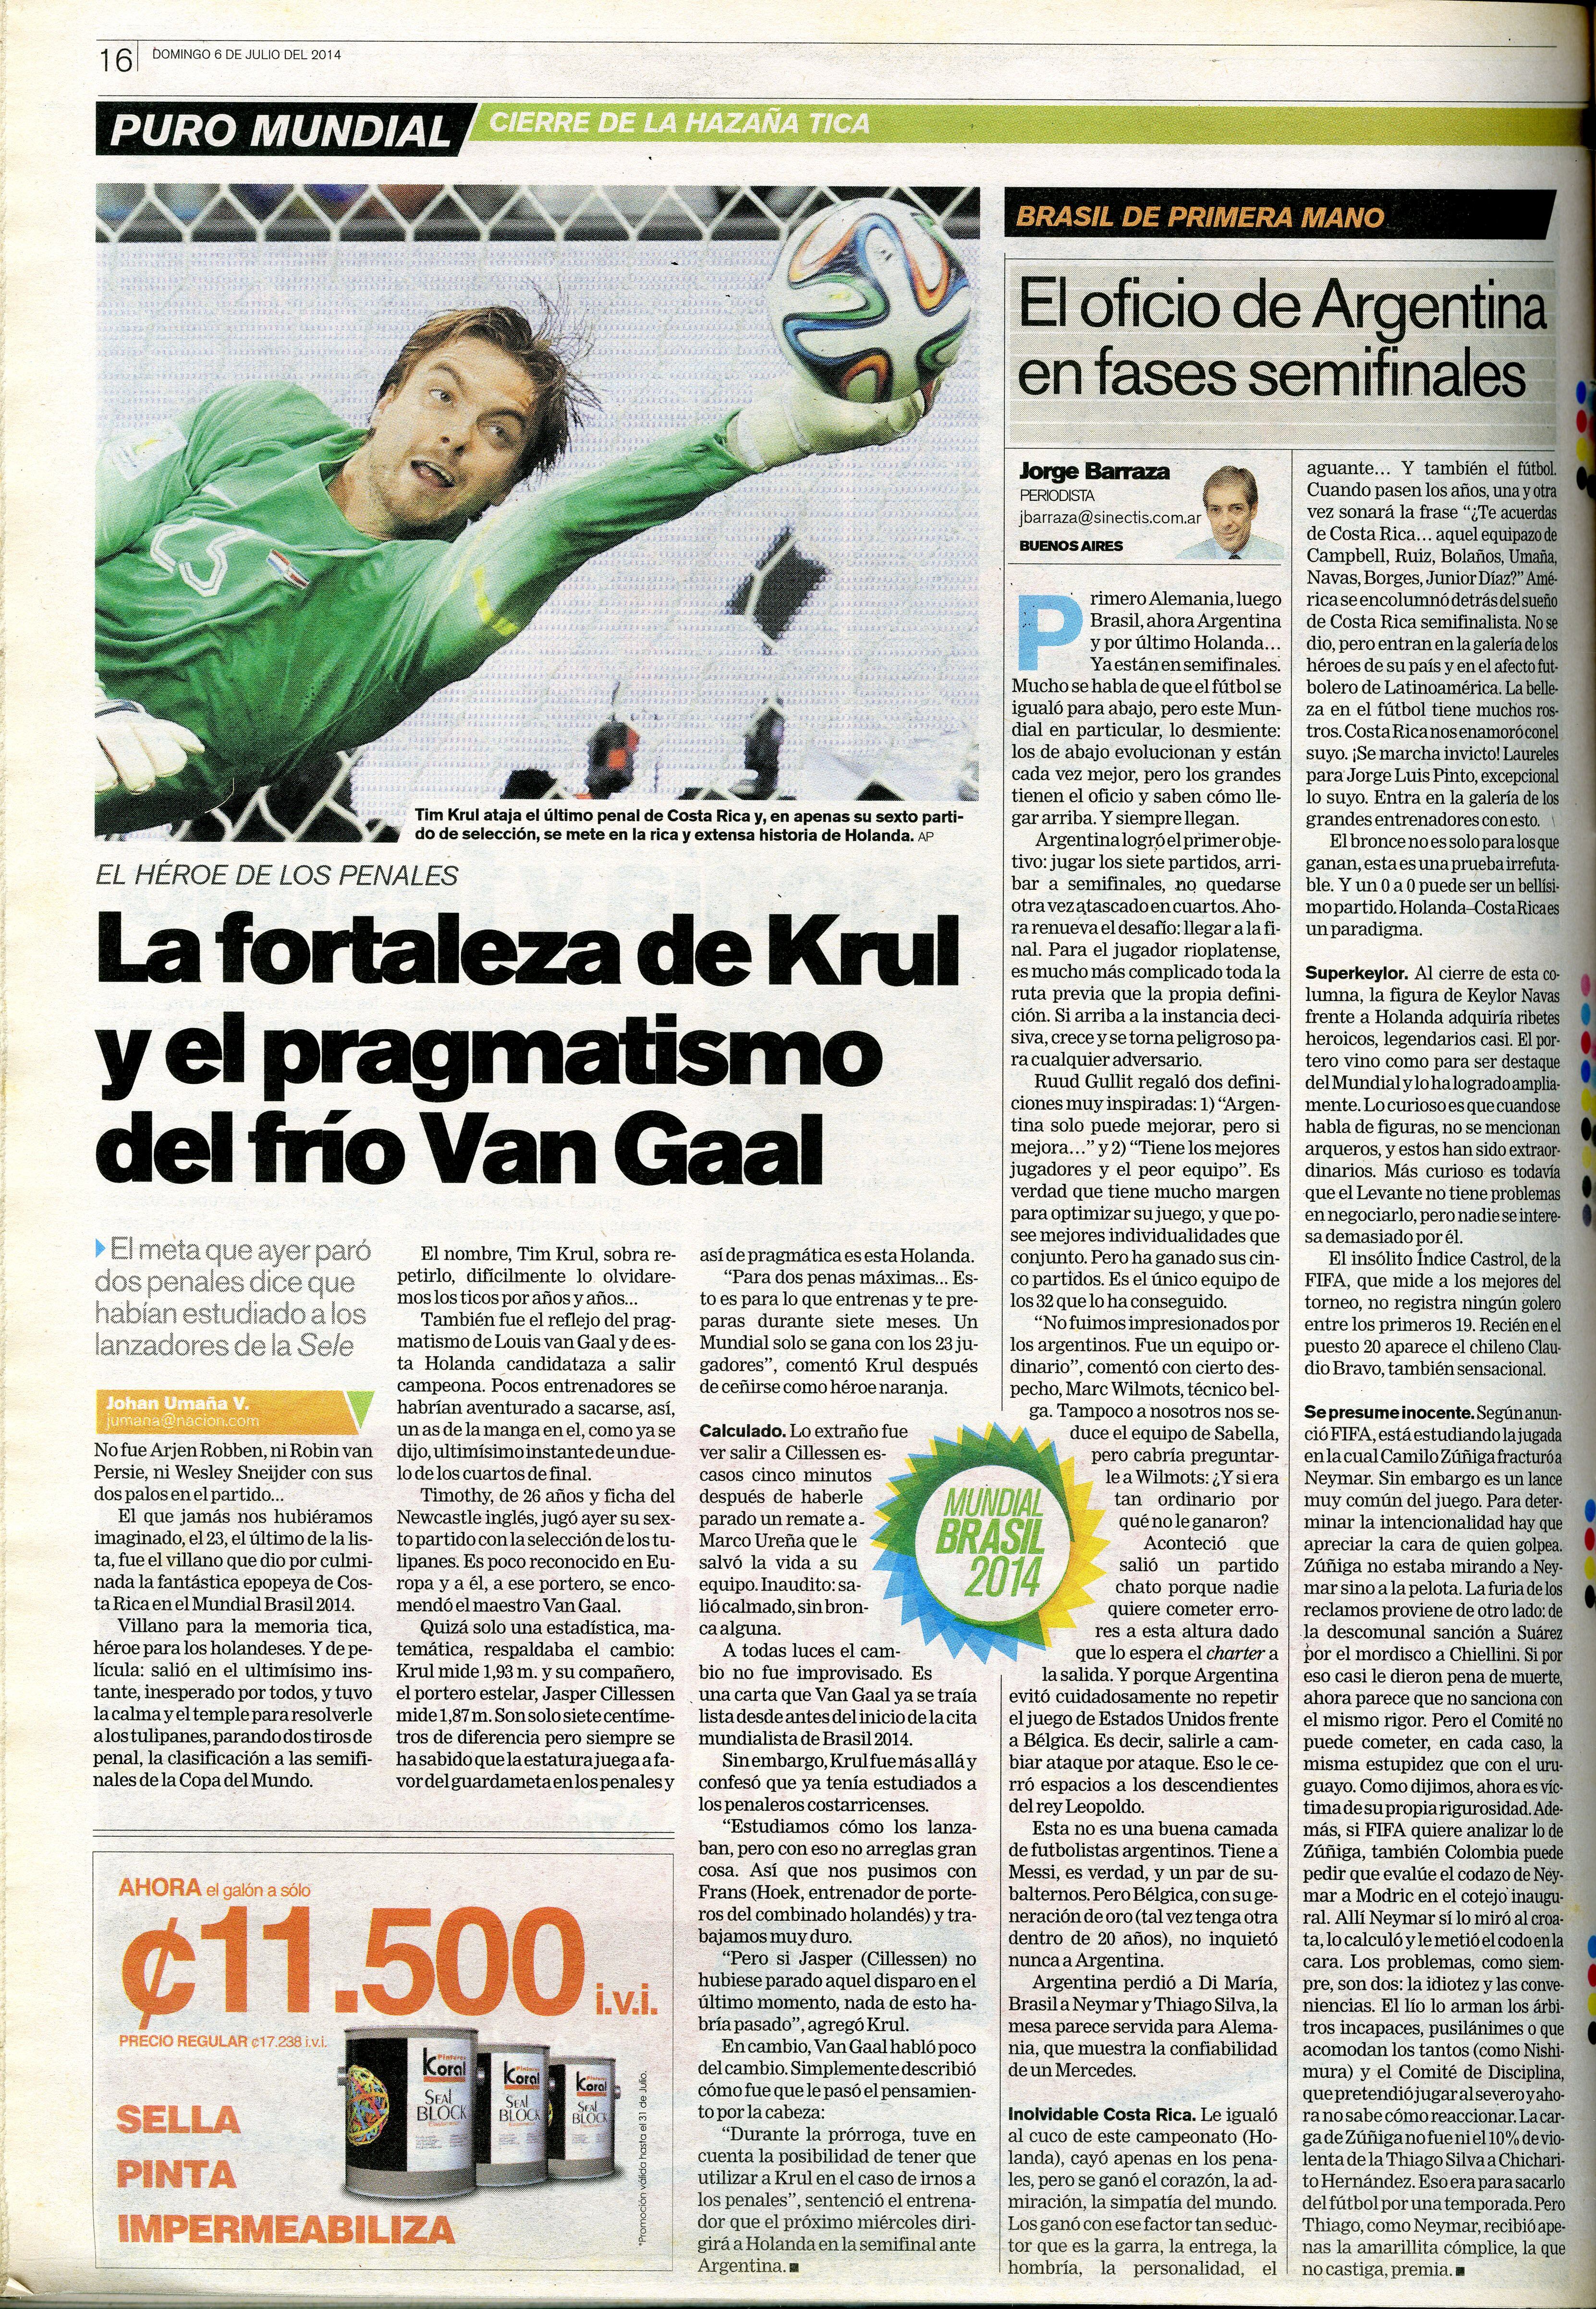 Tim Krul le atajó el último penal a la Selección de Costa Rica en el Mundial de Brasil 2014. Fotografía: Archivo LN